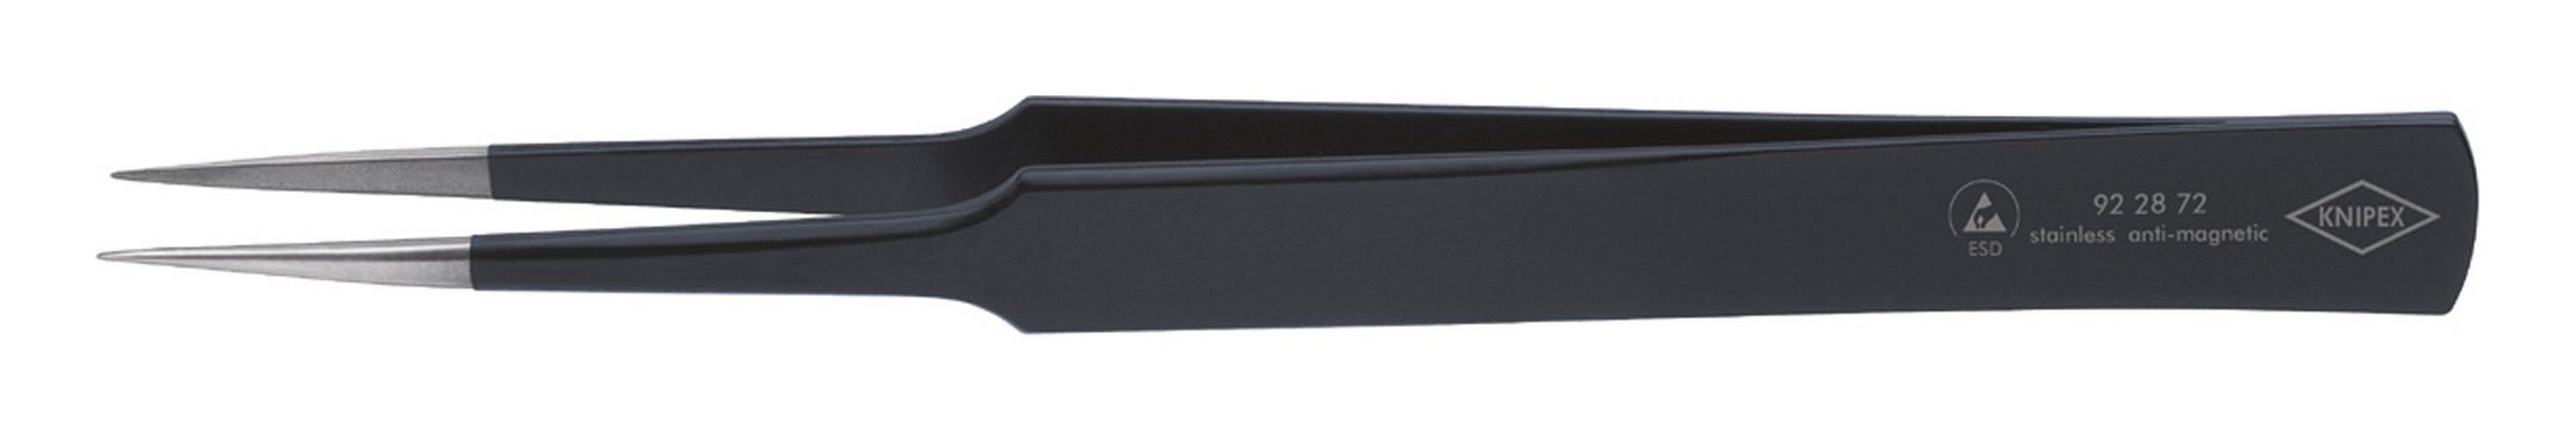 ESD mm schwarz 135 Knipex US-Nadelform Pinzette,